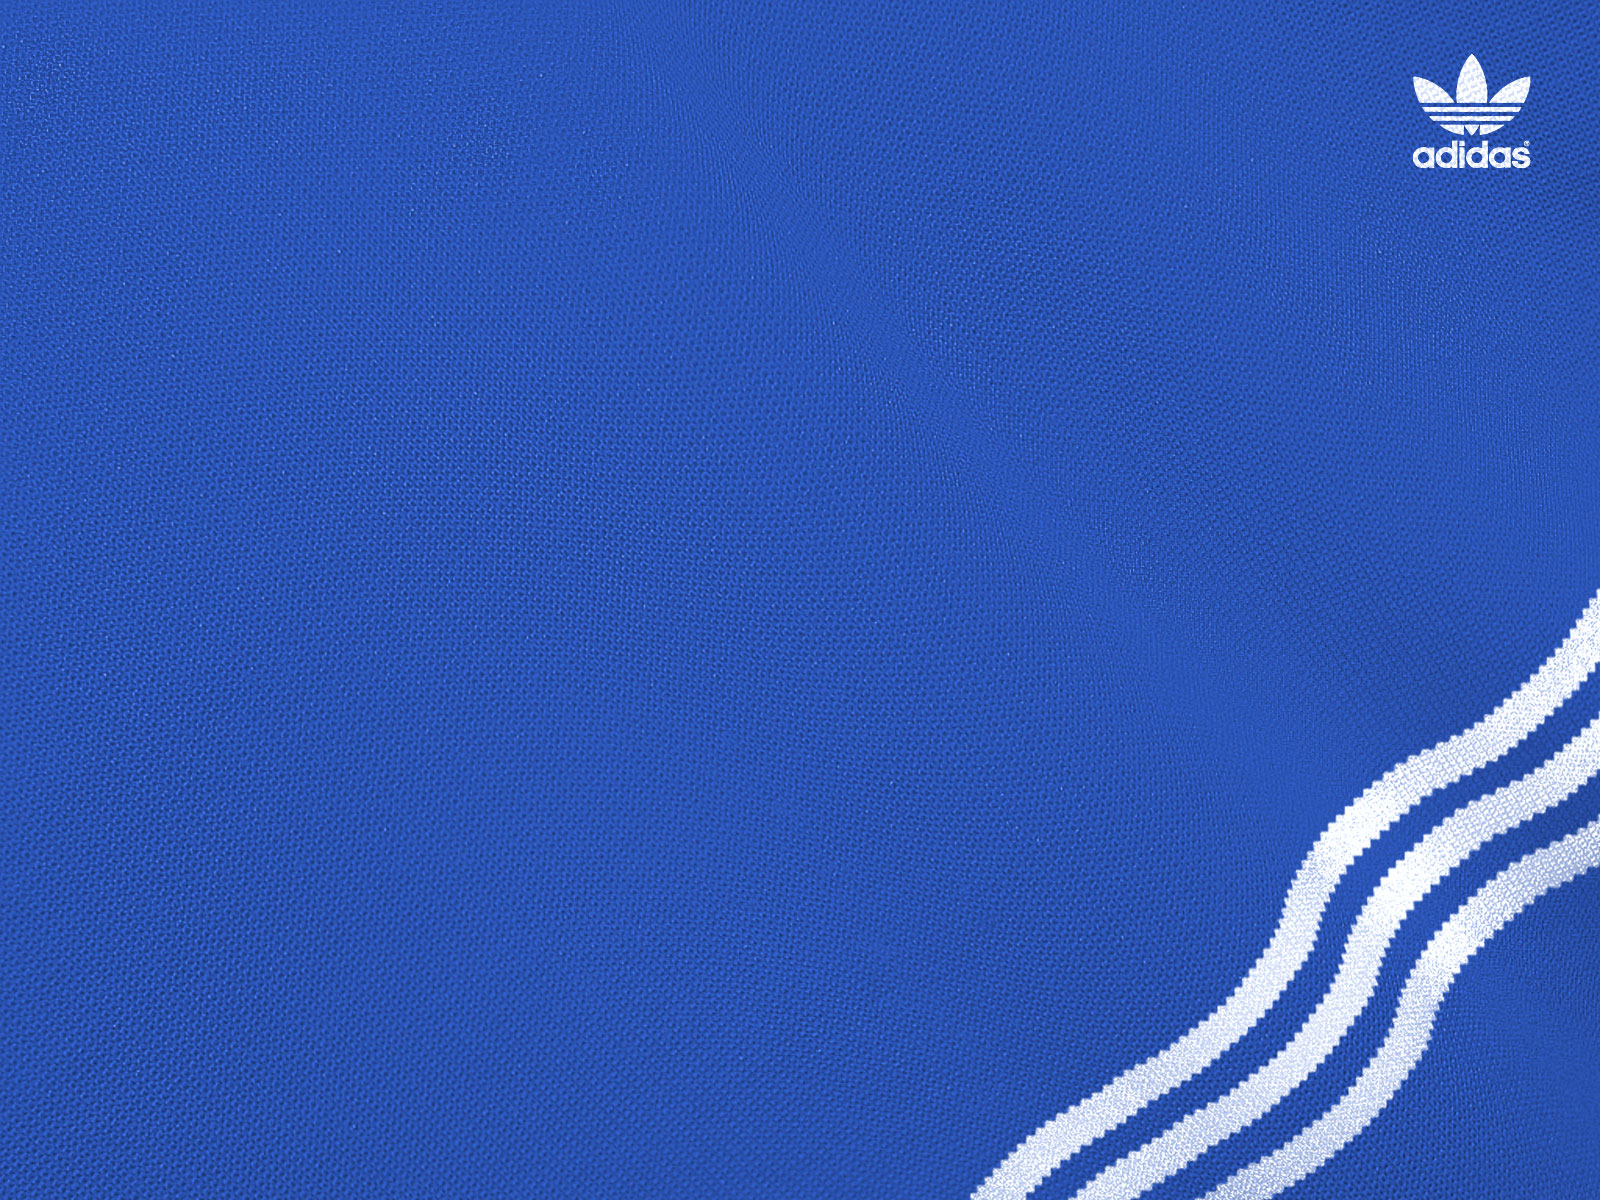 Adidas 3 Stripe Logo Wallpapers